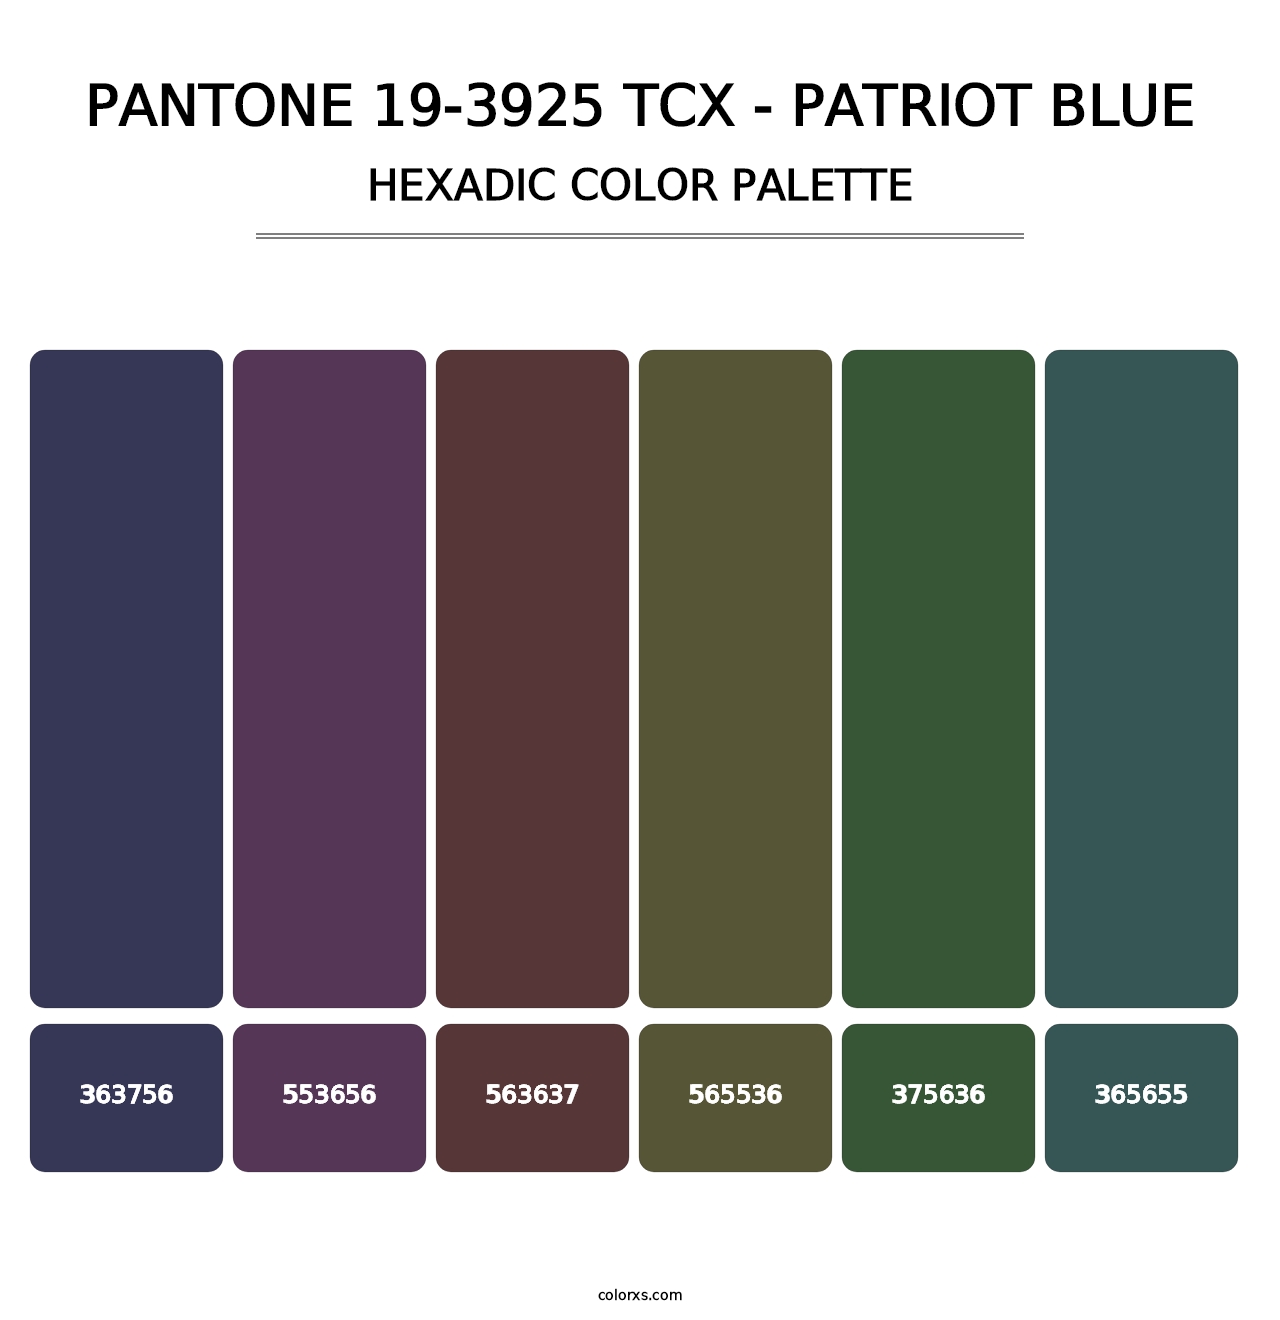 PANTONE 19-3925 TCX - Patriot Blue - Hexadic Color Palette